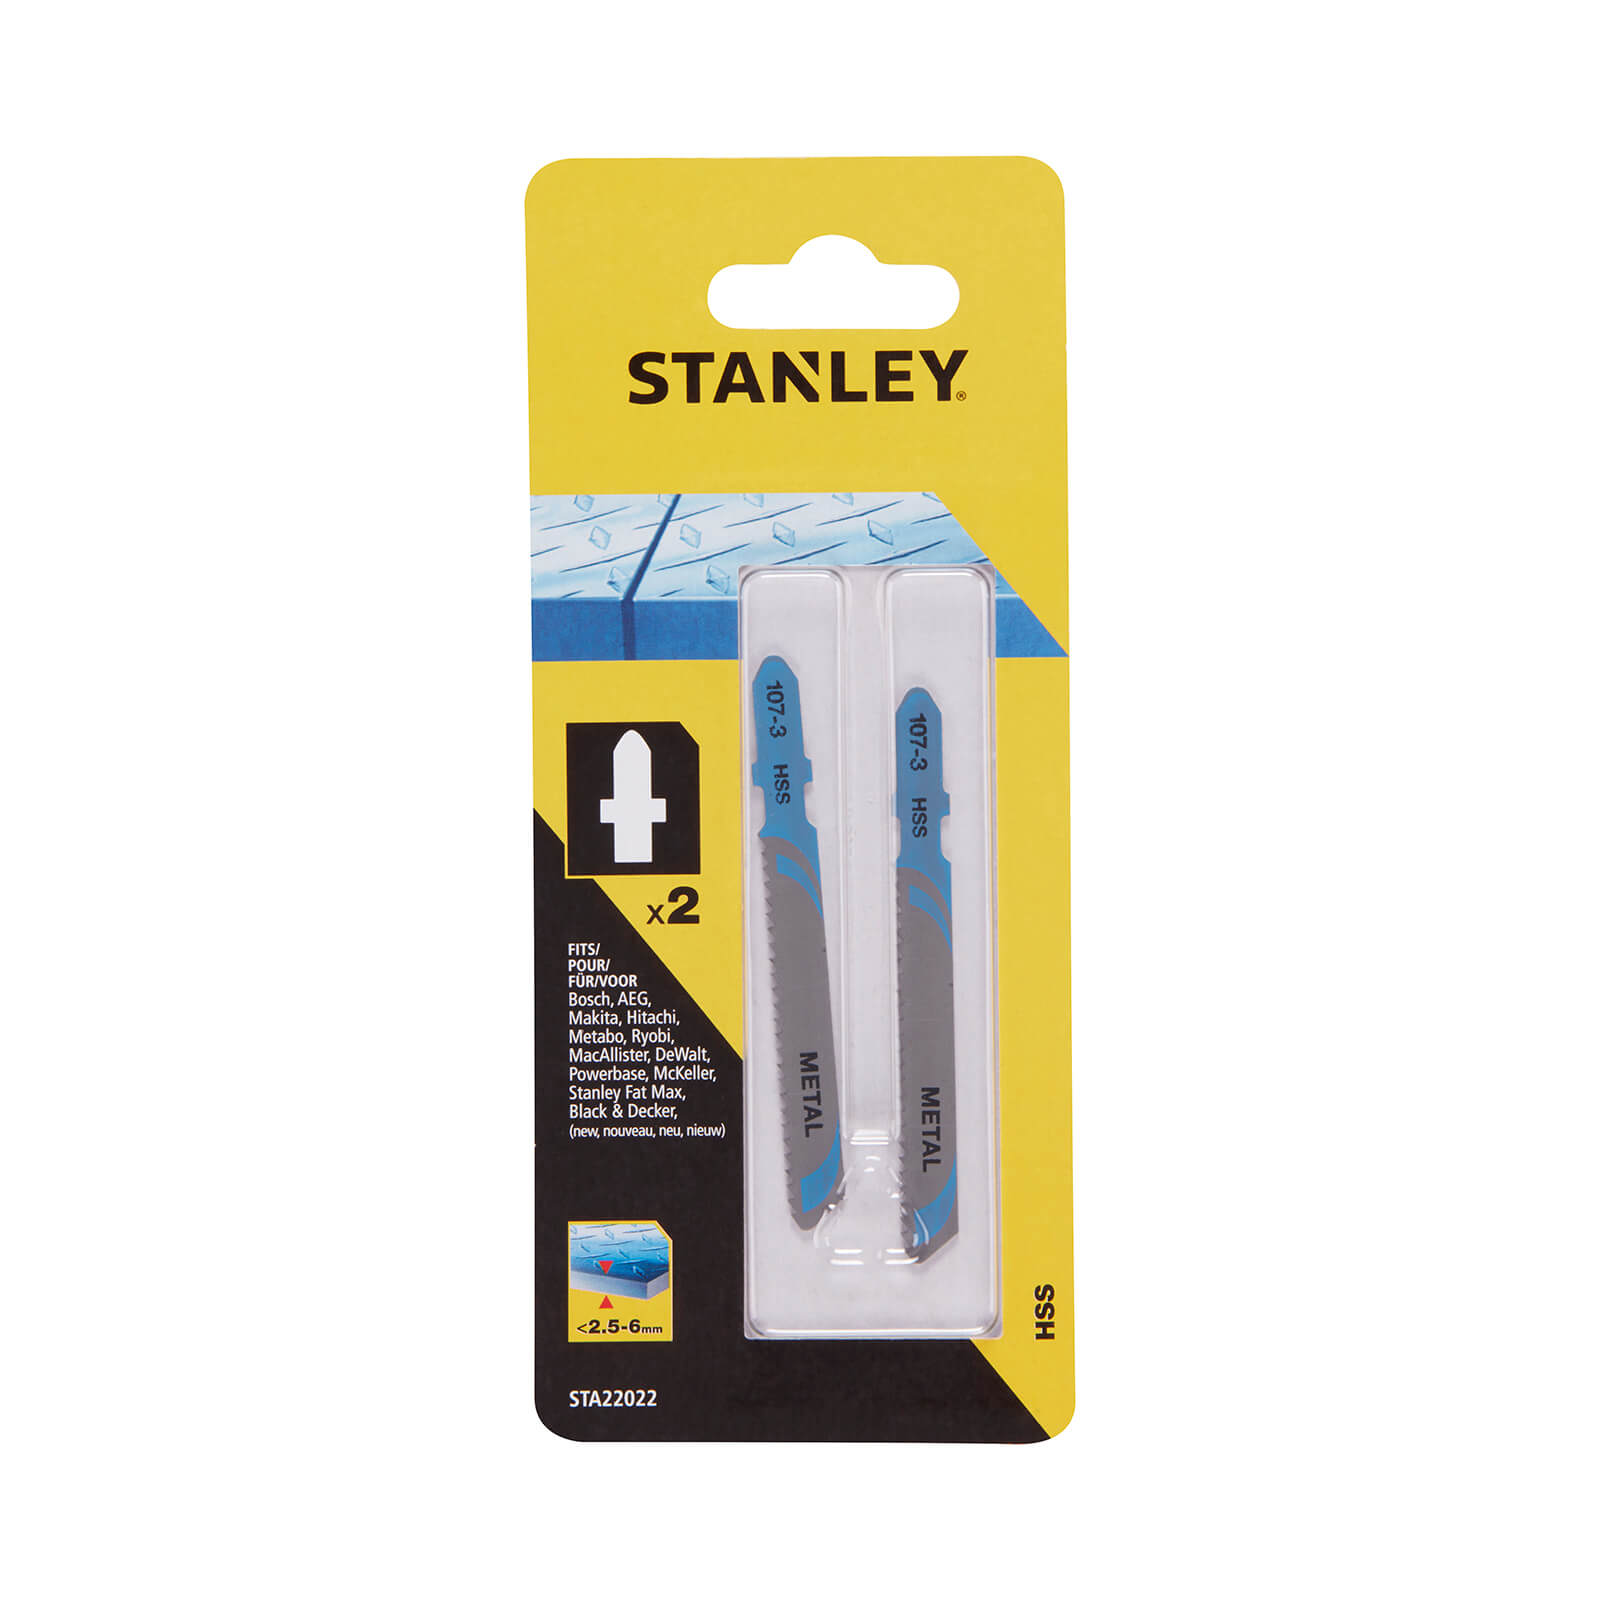 STANLEY 2x T-Shank HSS Jigsaw Blades - 48mm